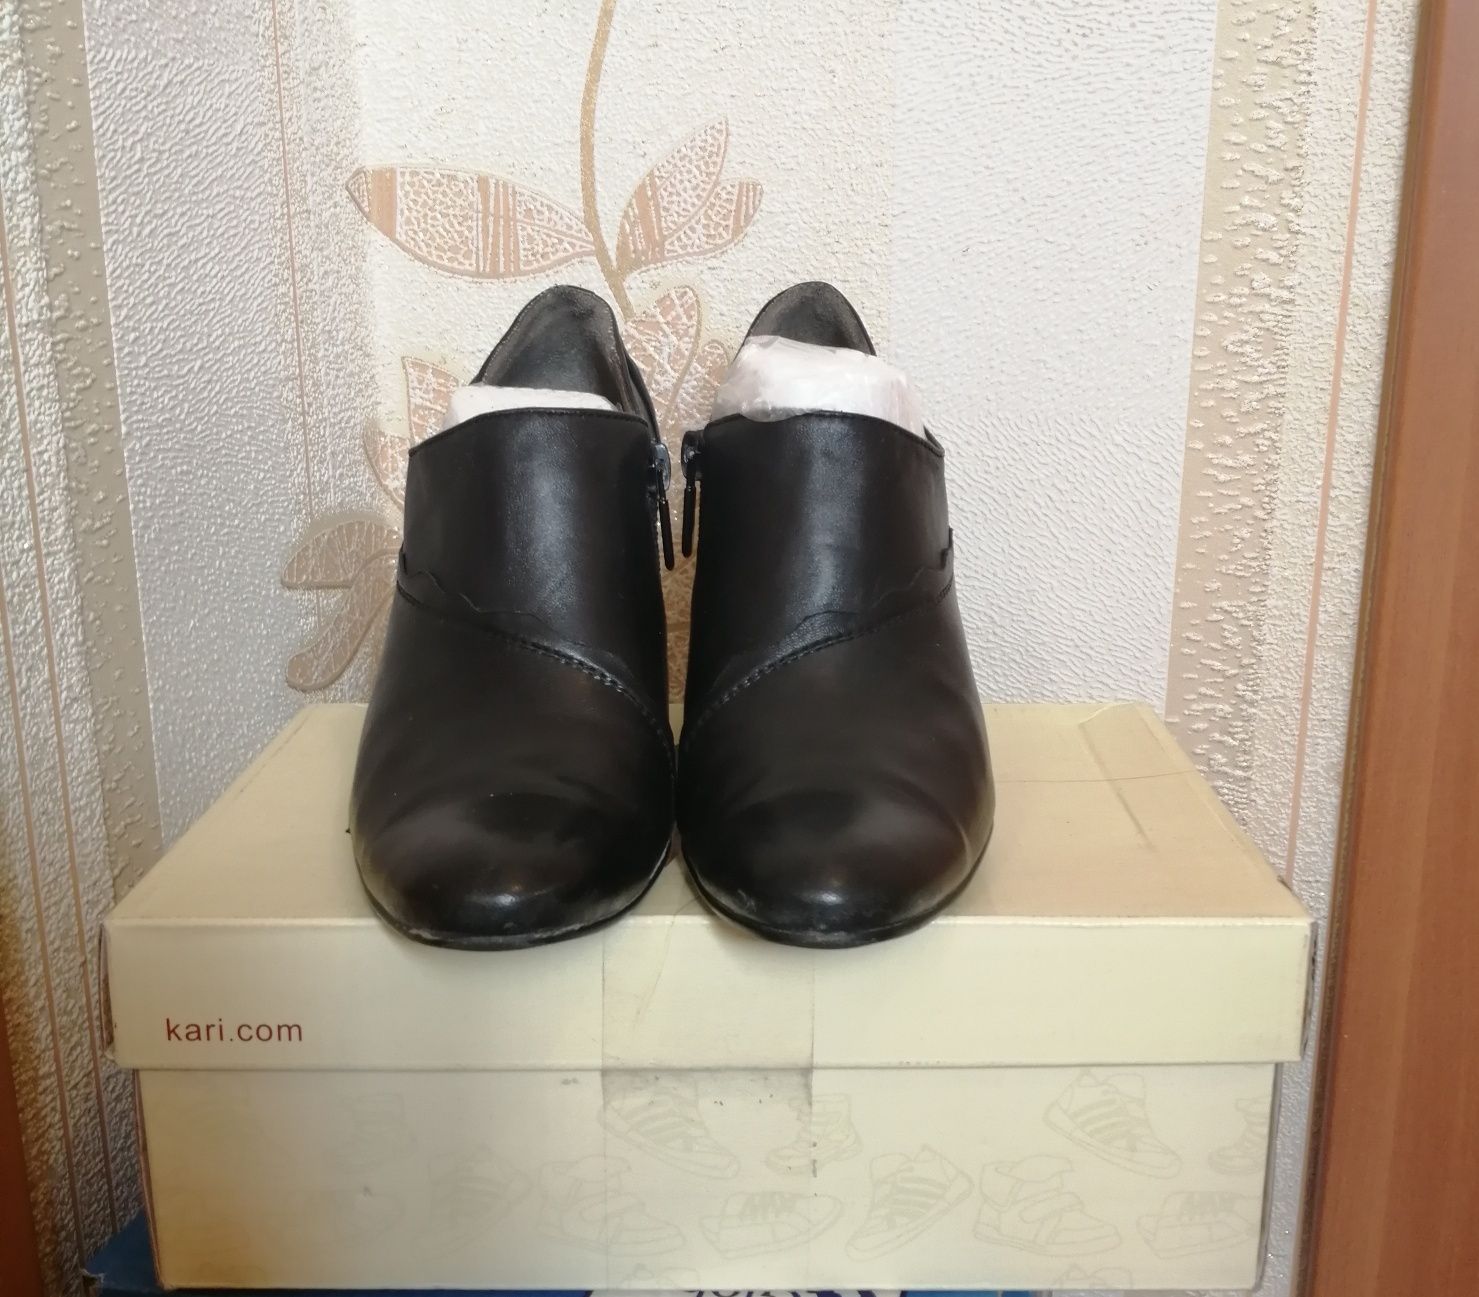 Кожаные туфли "Clotilde" 6500 тг. Россия.